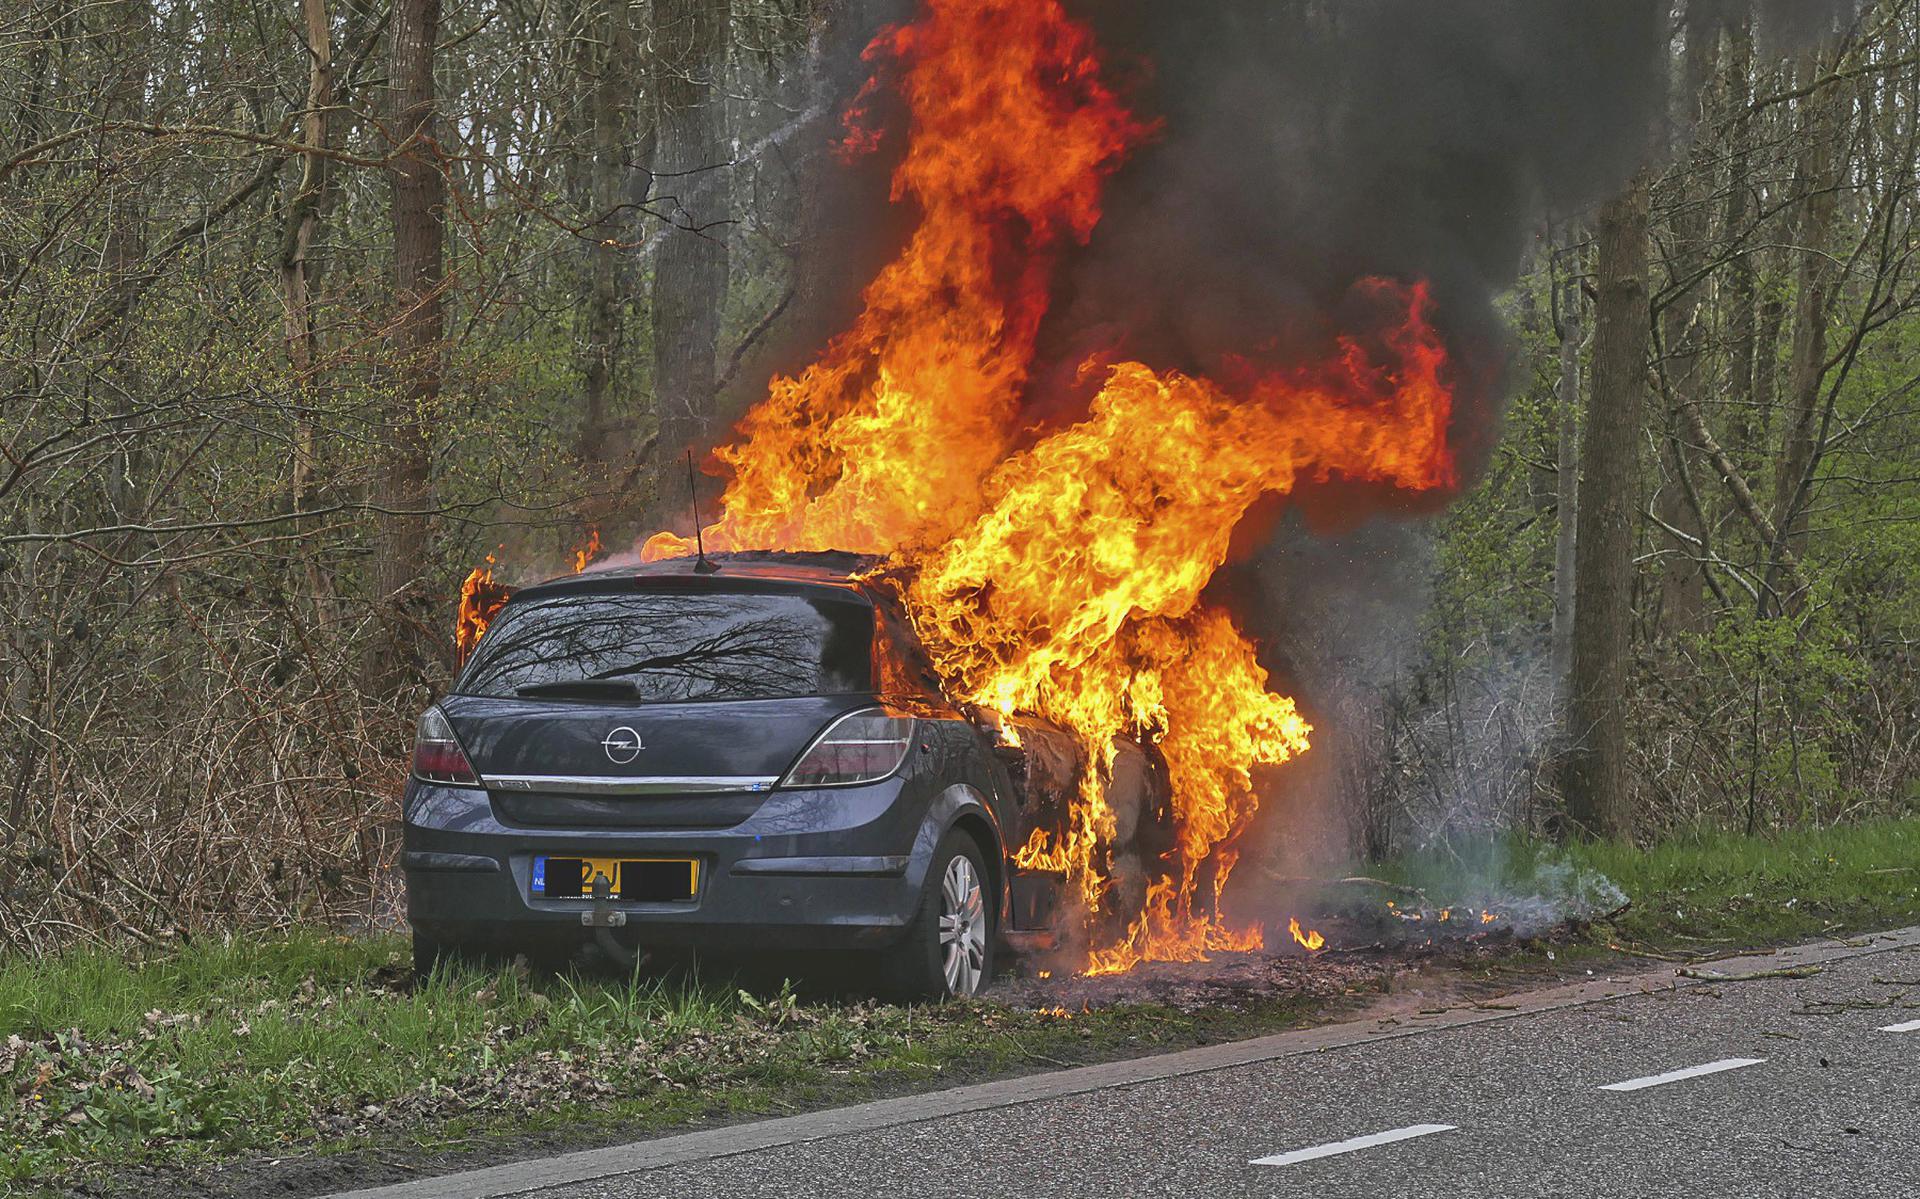 Zondagmorgen vloog op de Leeuwenveenscheweg/Willem Moesweg in Veeningen een auto in de brand na botsing met een boom. De bestuurder kon het voertuig tijdig verlaten en is met onbekend letsel naar een ziekenhuis vervoerd. De auto raakte totaal verwoest.